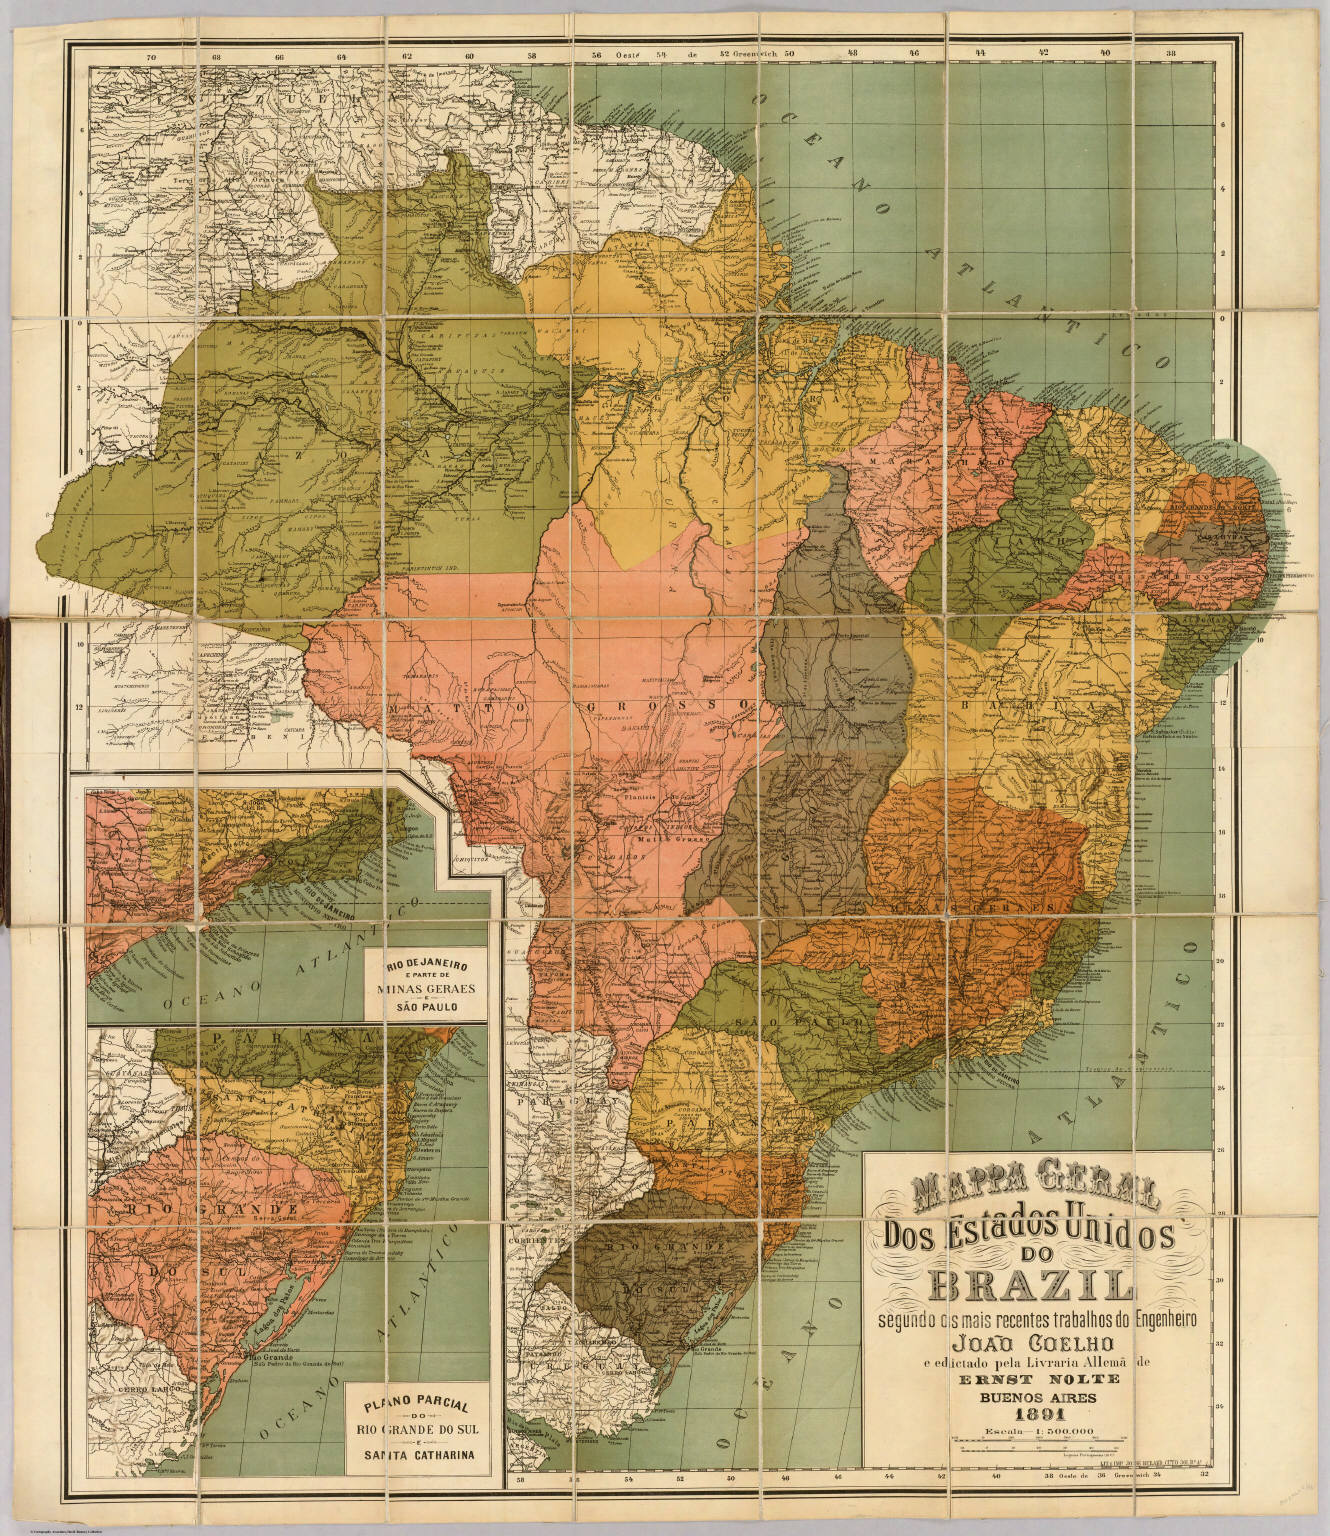 Mappa Geral Dos Estados Unidos Do Brazil David Rumsey Historical Map Collection 7506